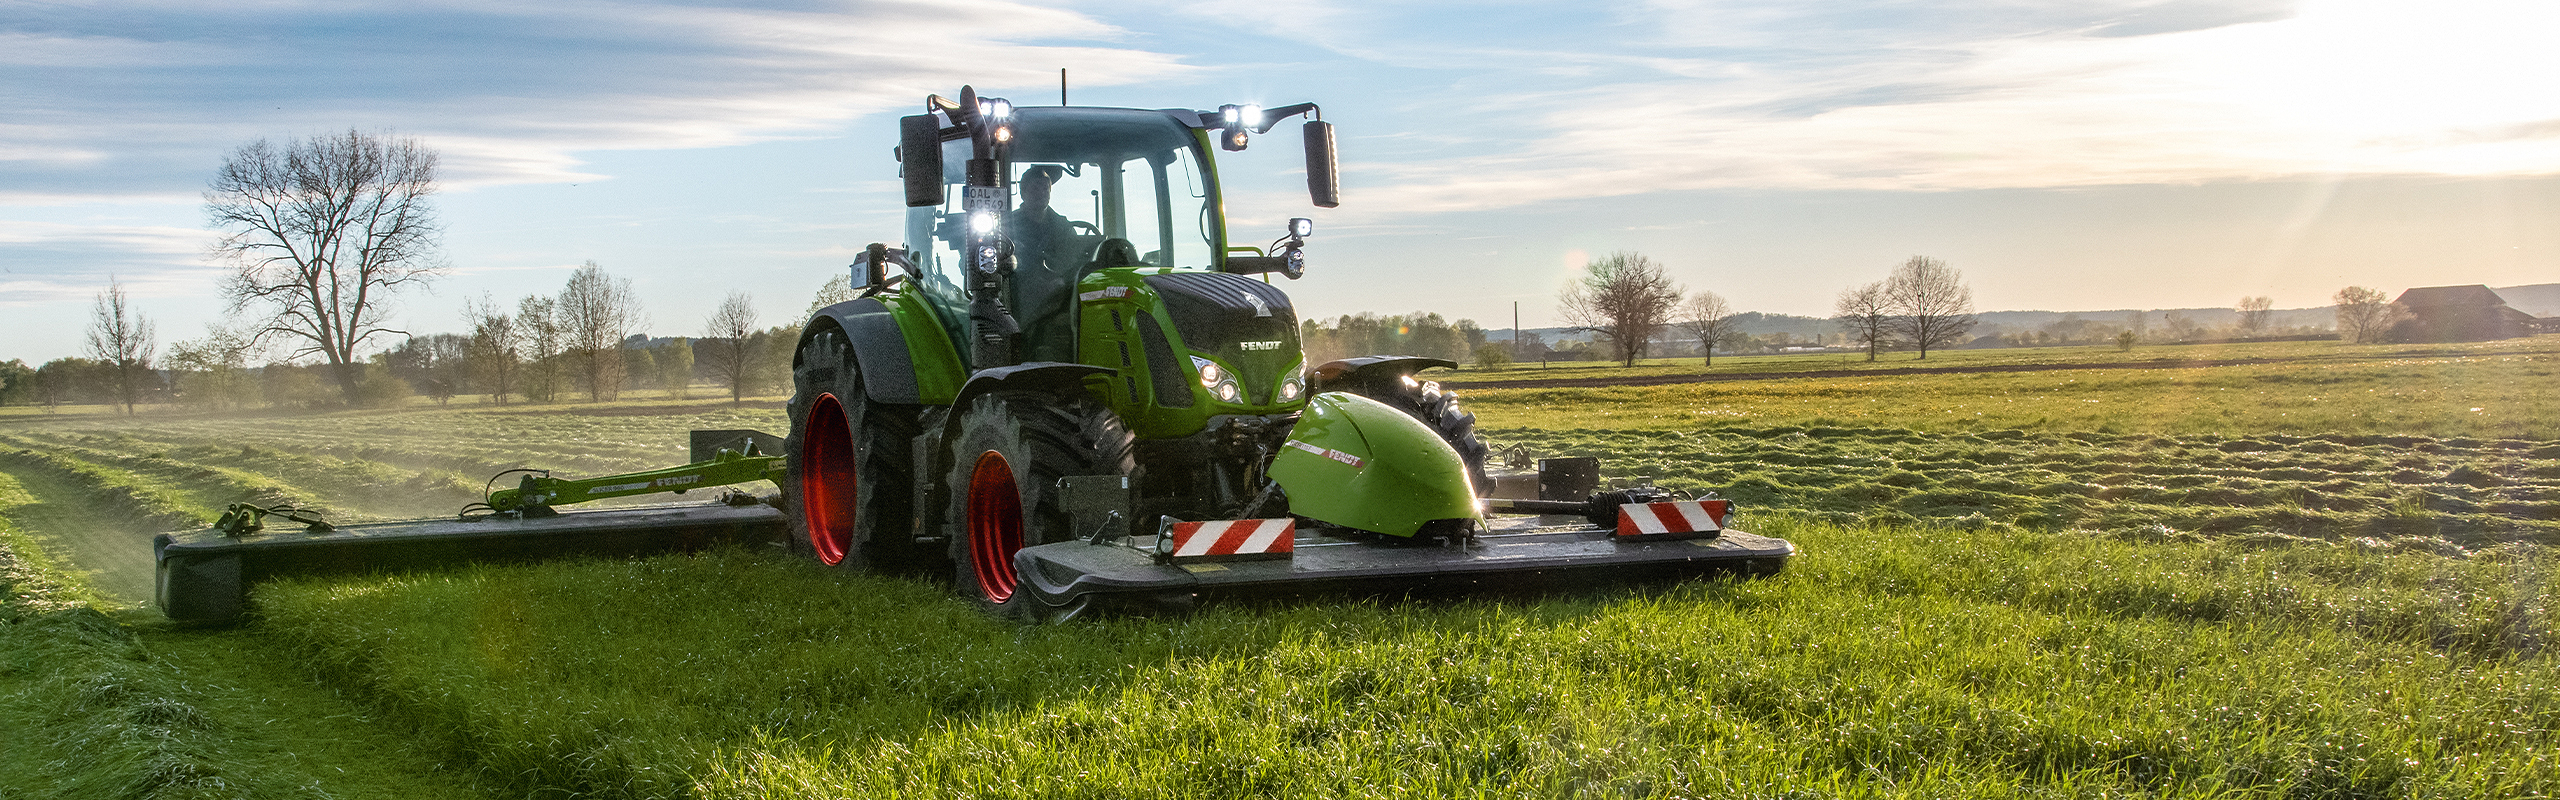 Zöld színű Fendt traktor dolgozik egy fákkal körülvett mezőn, kissé felhős égbolt alatt, napfelkeltekor vagy napnyugtakor.